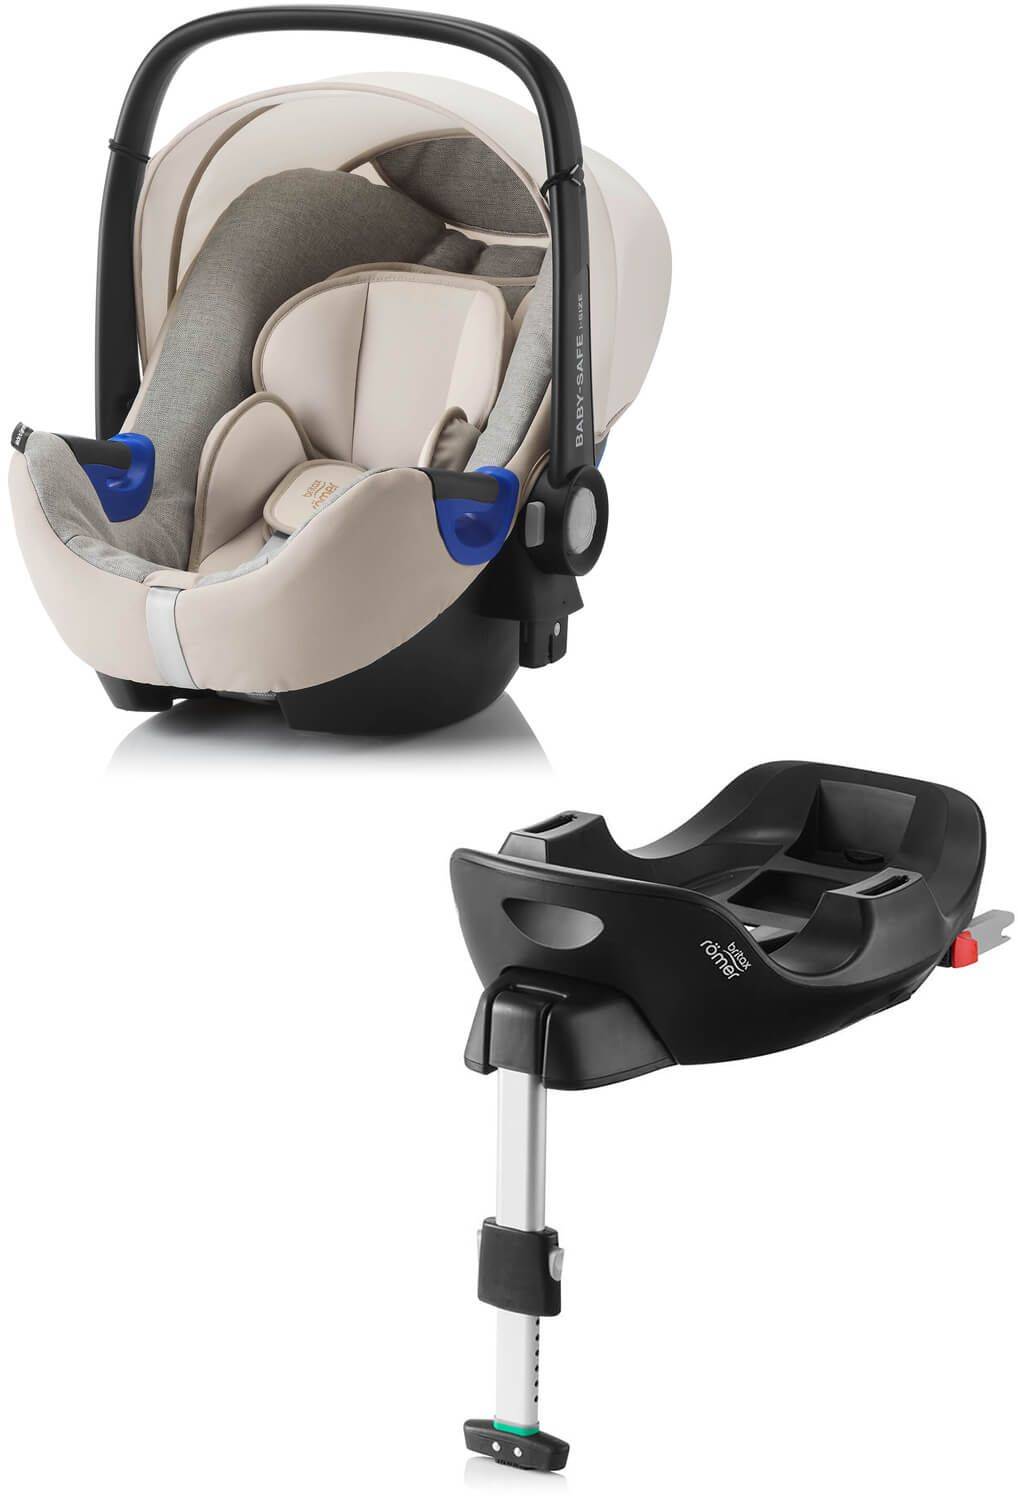 Сравнение автомобильных кресел Maxi-Cosi CabrioFix и Britax Römer Baby Safe Plus II